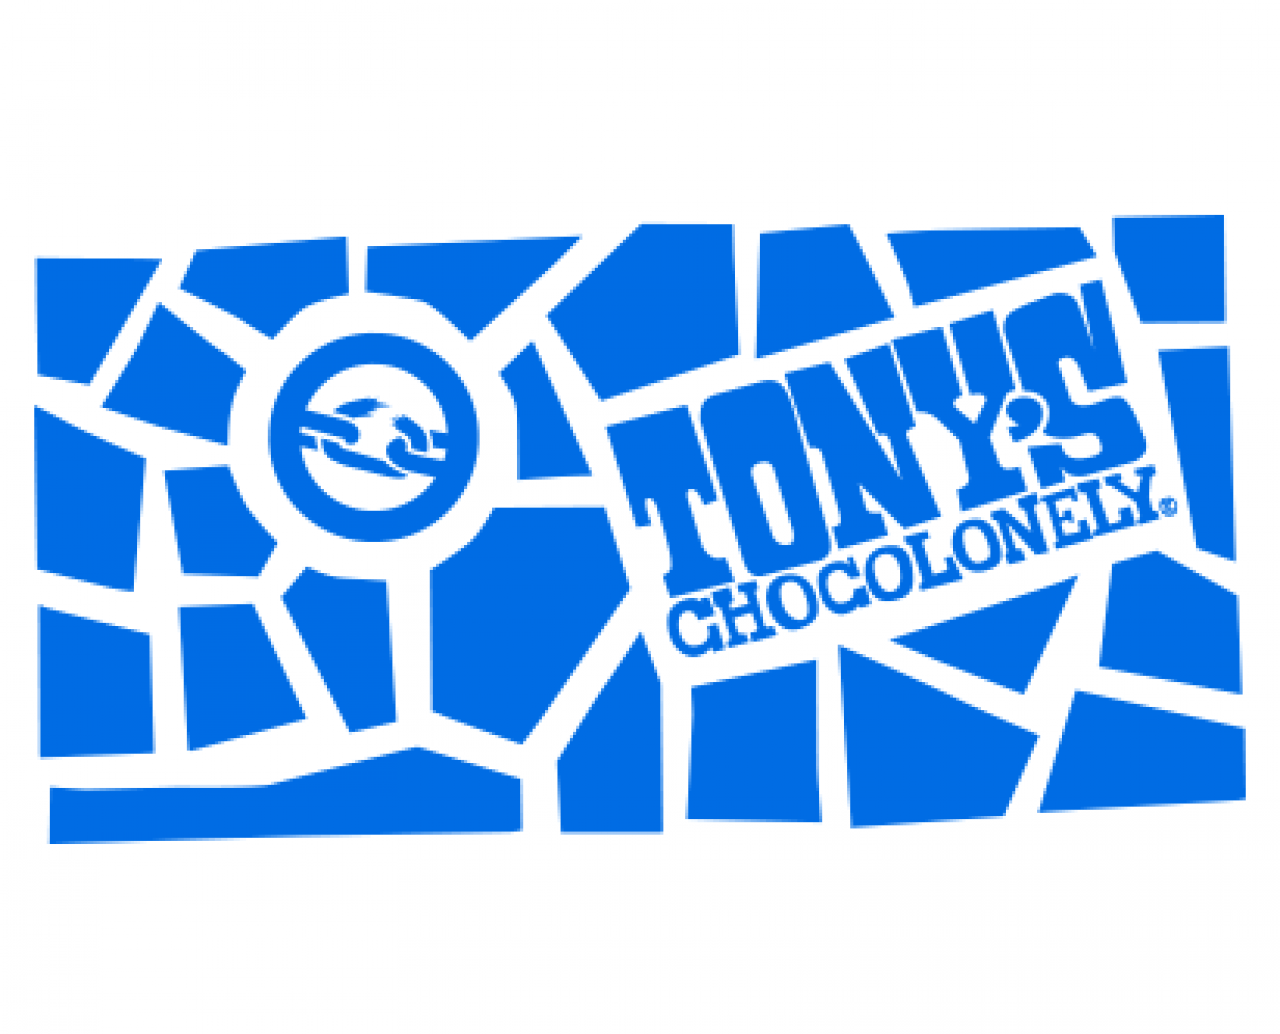 Tony's Logo - Tony's impact's Chocolonely